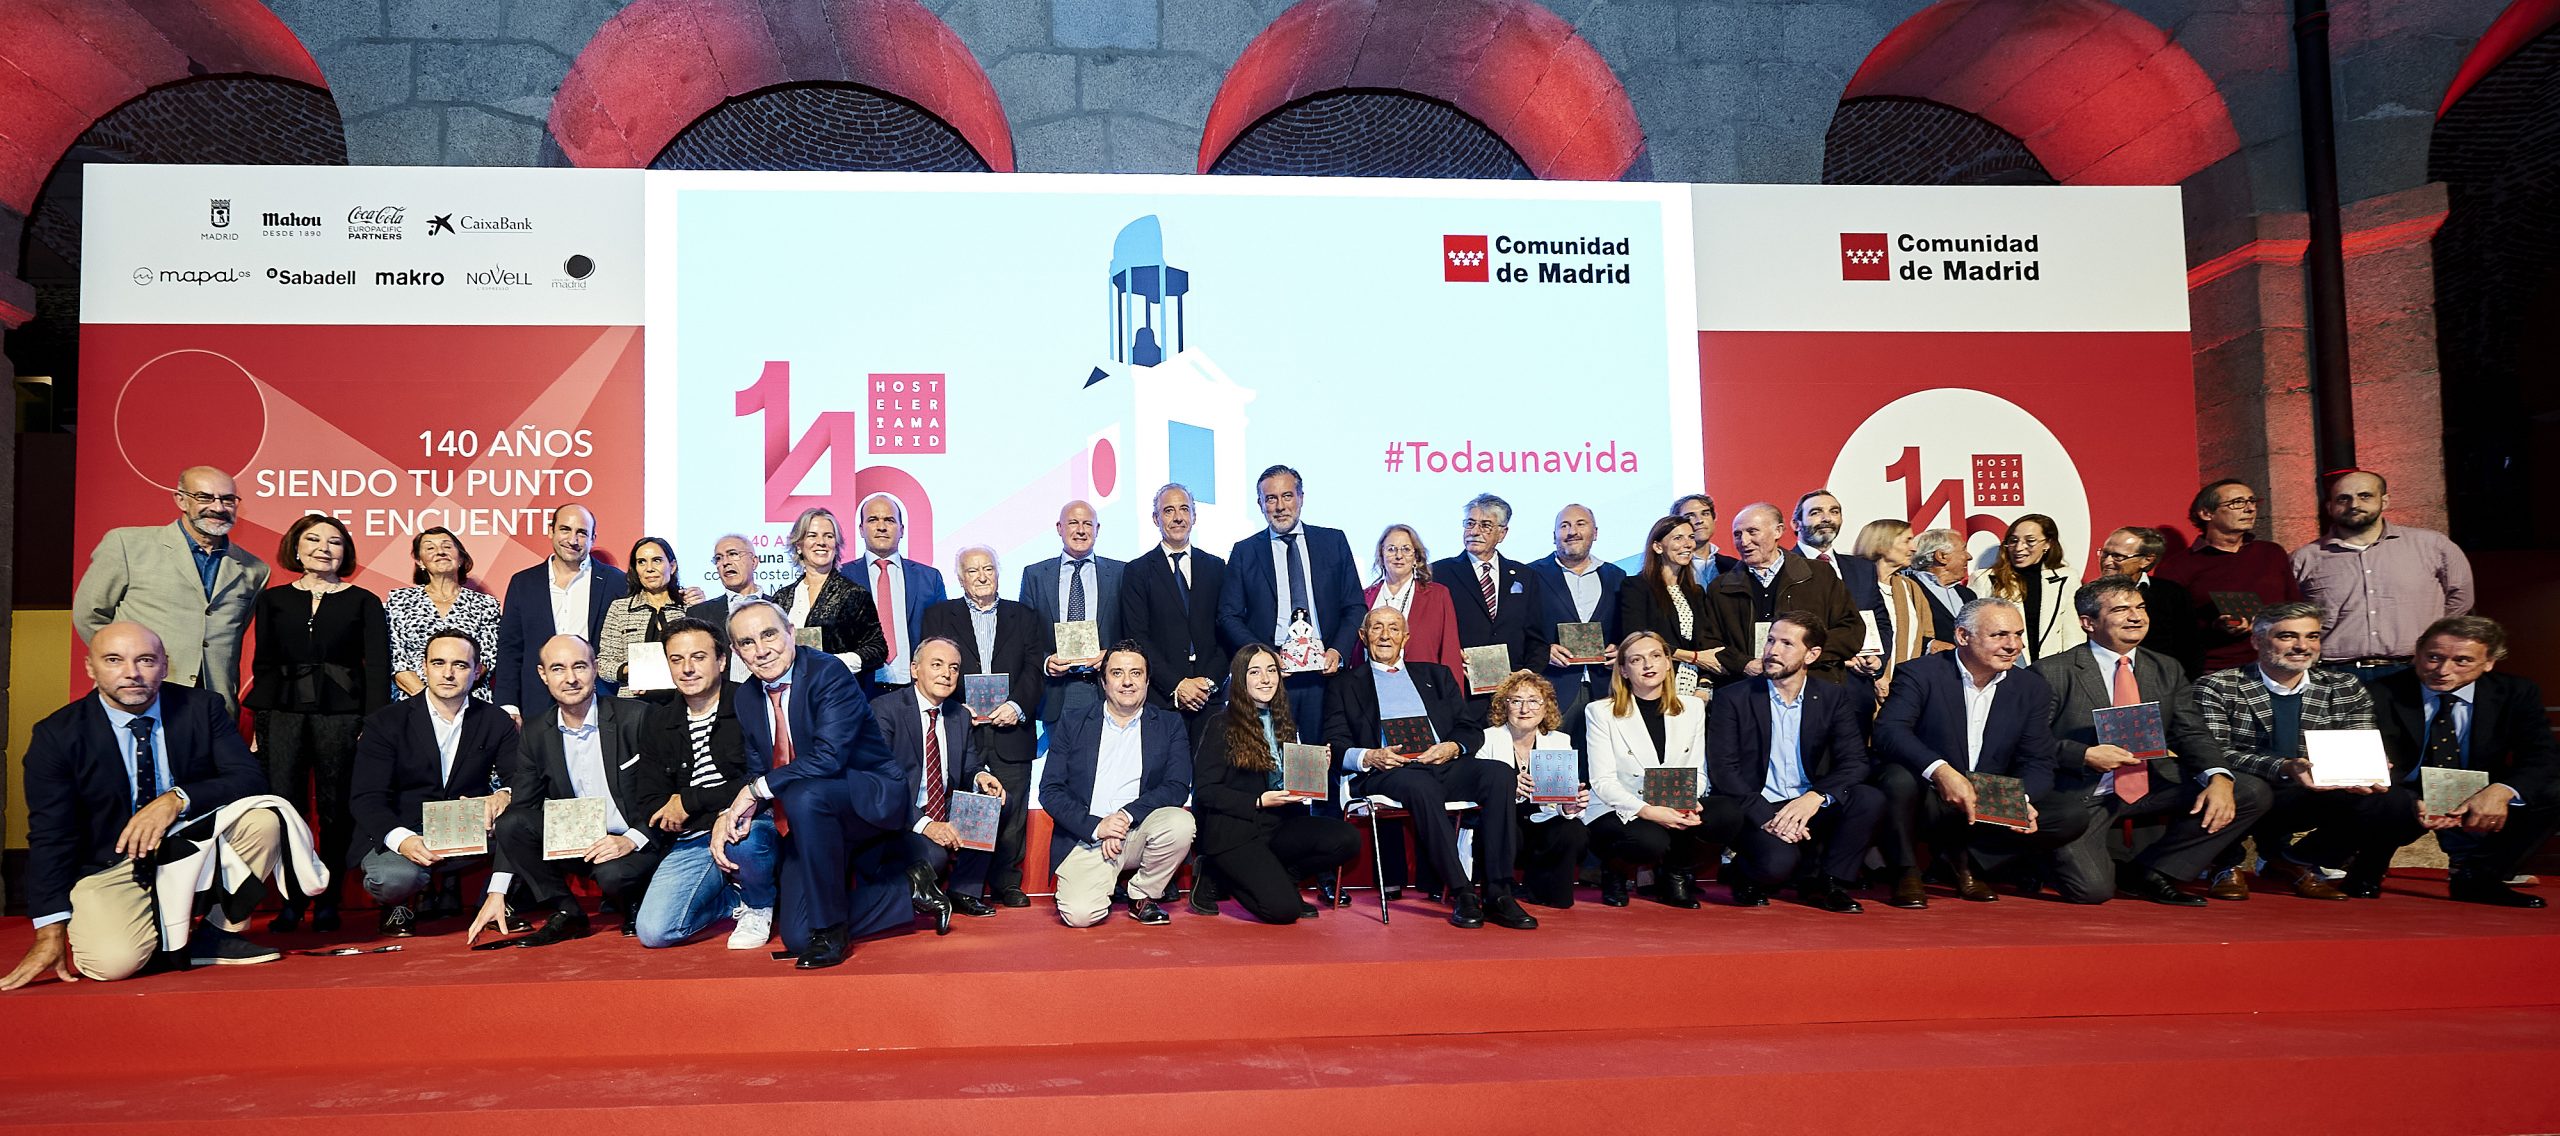 Hostelería Madrid premia a Isabel Díaz Ayuso por su apoyo a la hostelería de la región durante su mandato - La Viña